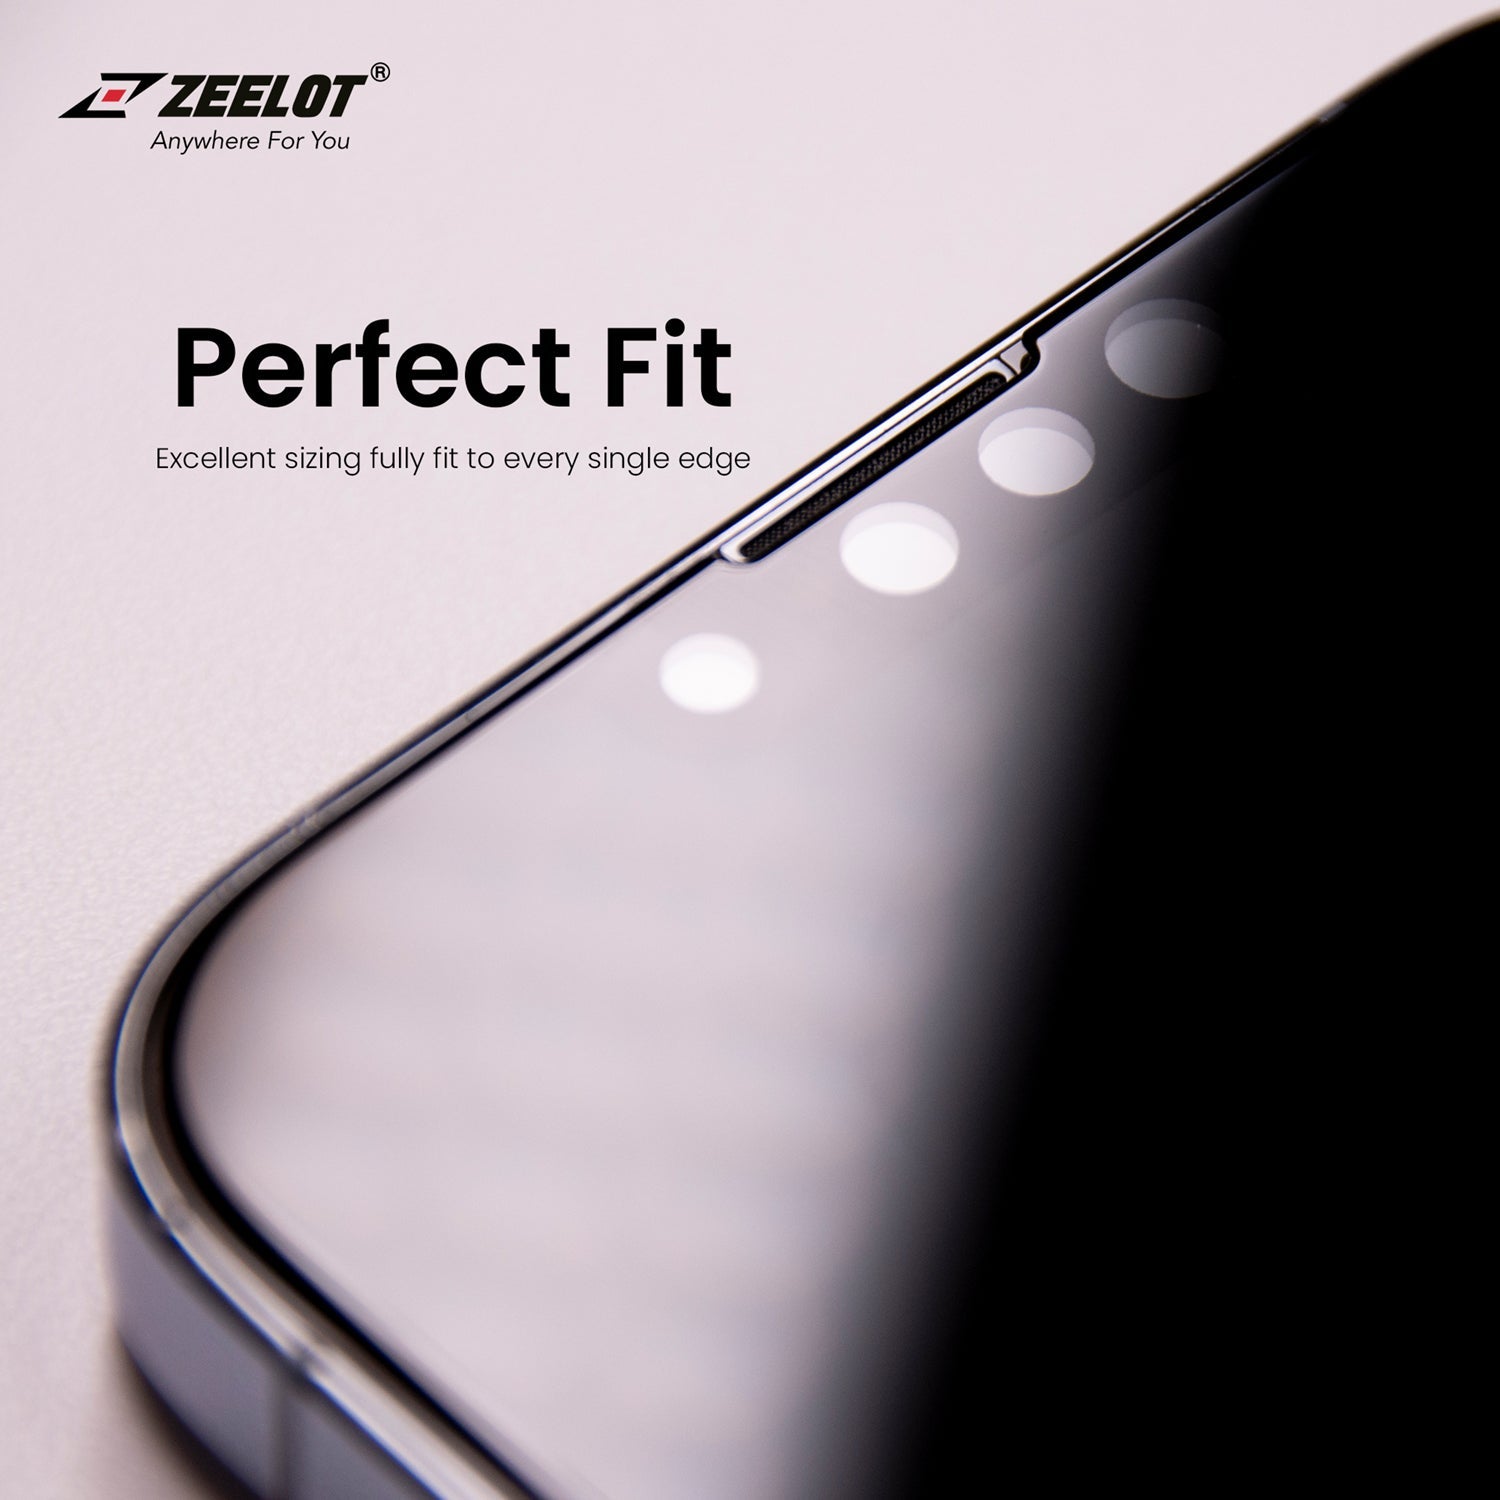 ZEELOT SOLIDsleek Tempered Glass Screen Protector for iPhone 13 Pro Max 6.7"(2021) Default ZEELOT 